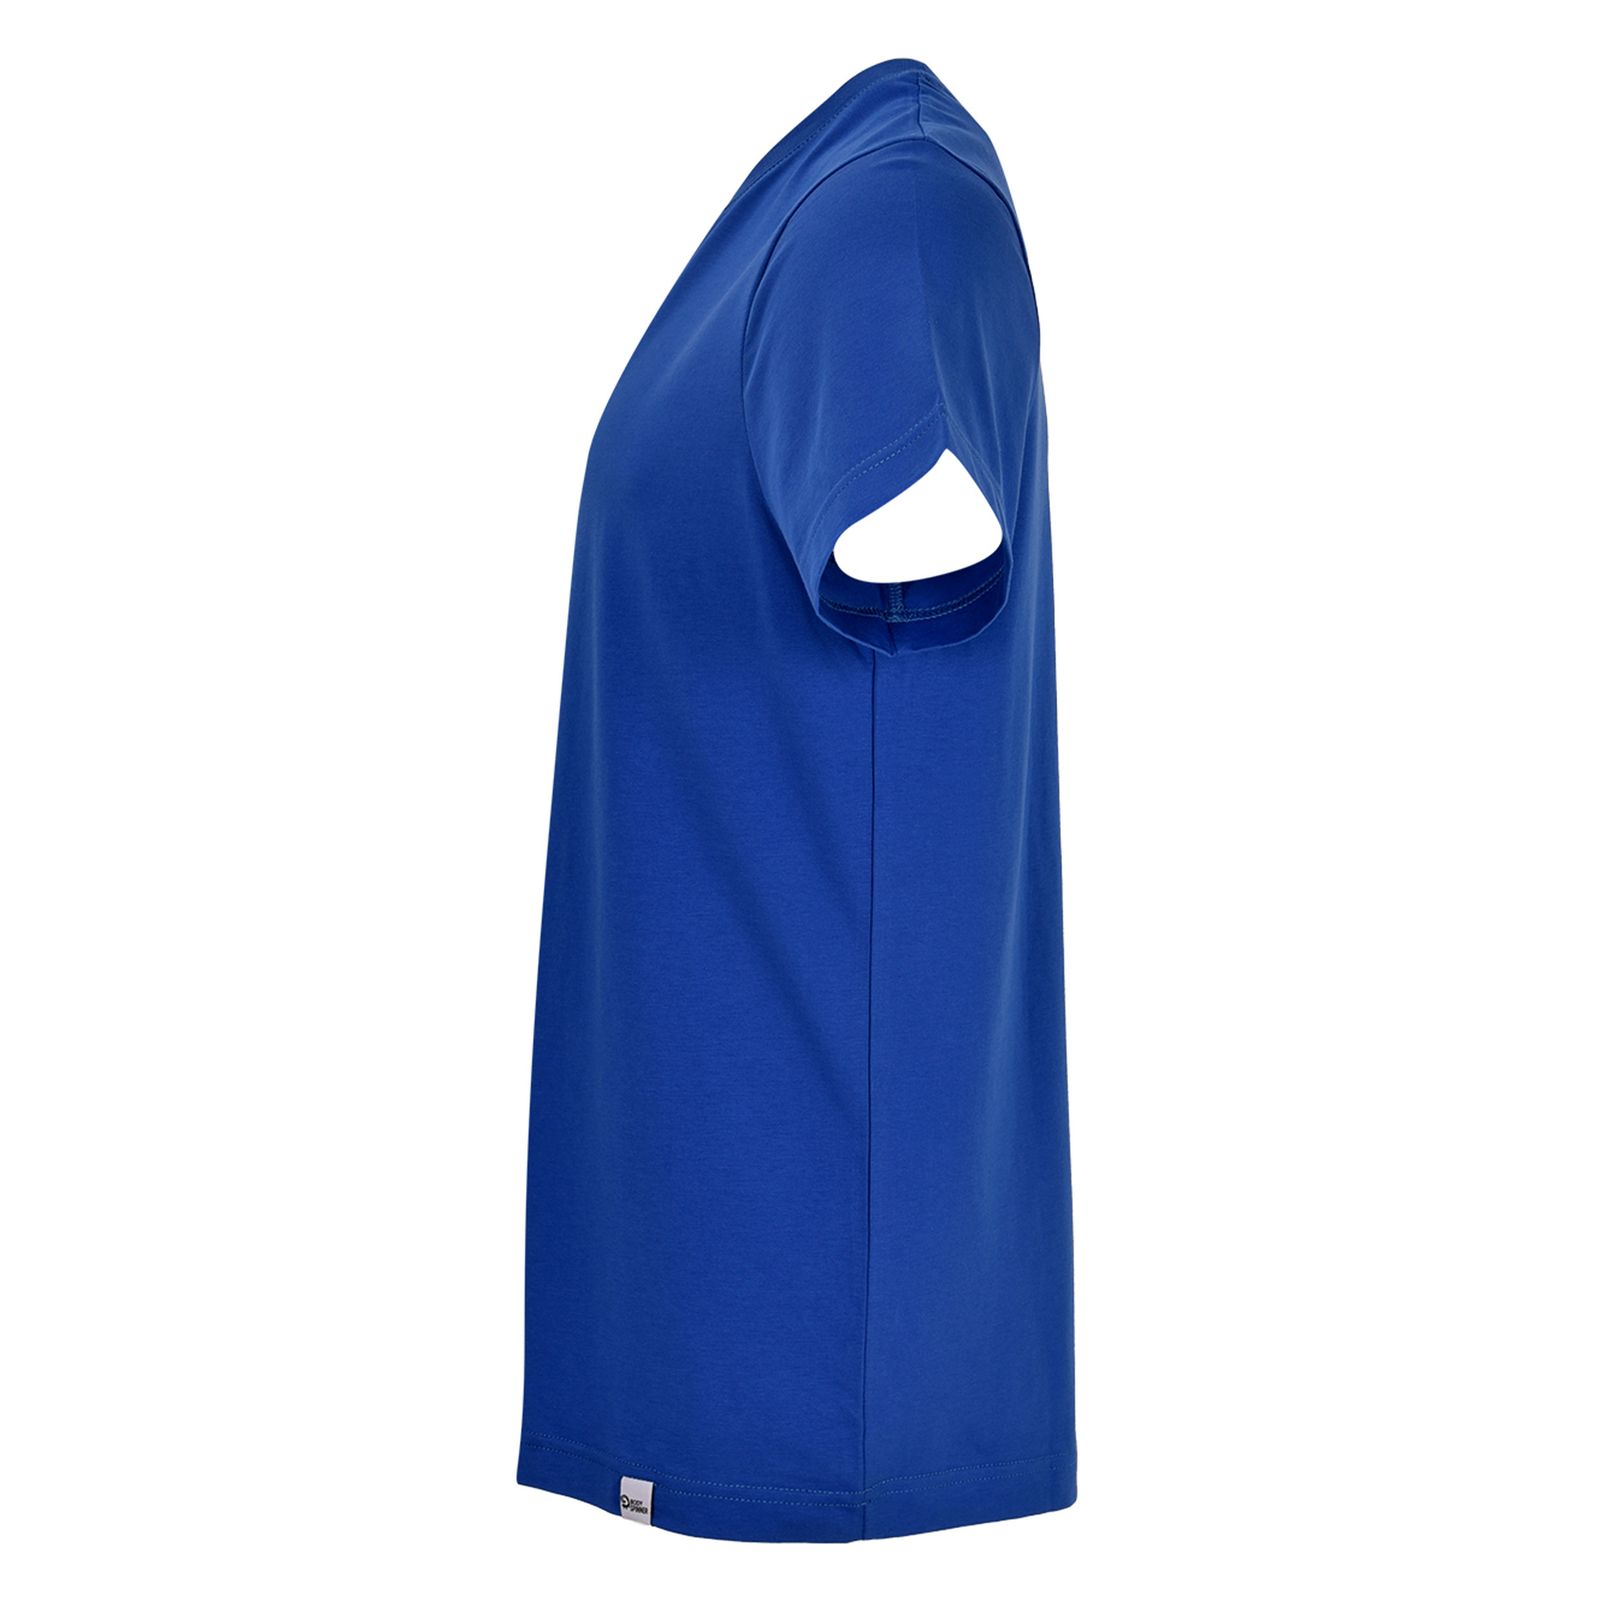 تی شرت آستین کوتاه مردانه بادی اسپینر مدل 11964737 کد 3 رنگ آبی -  - 2